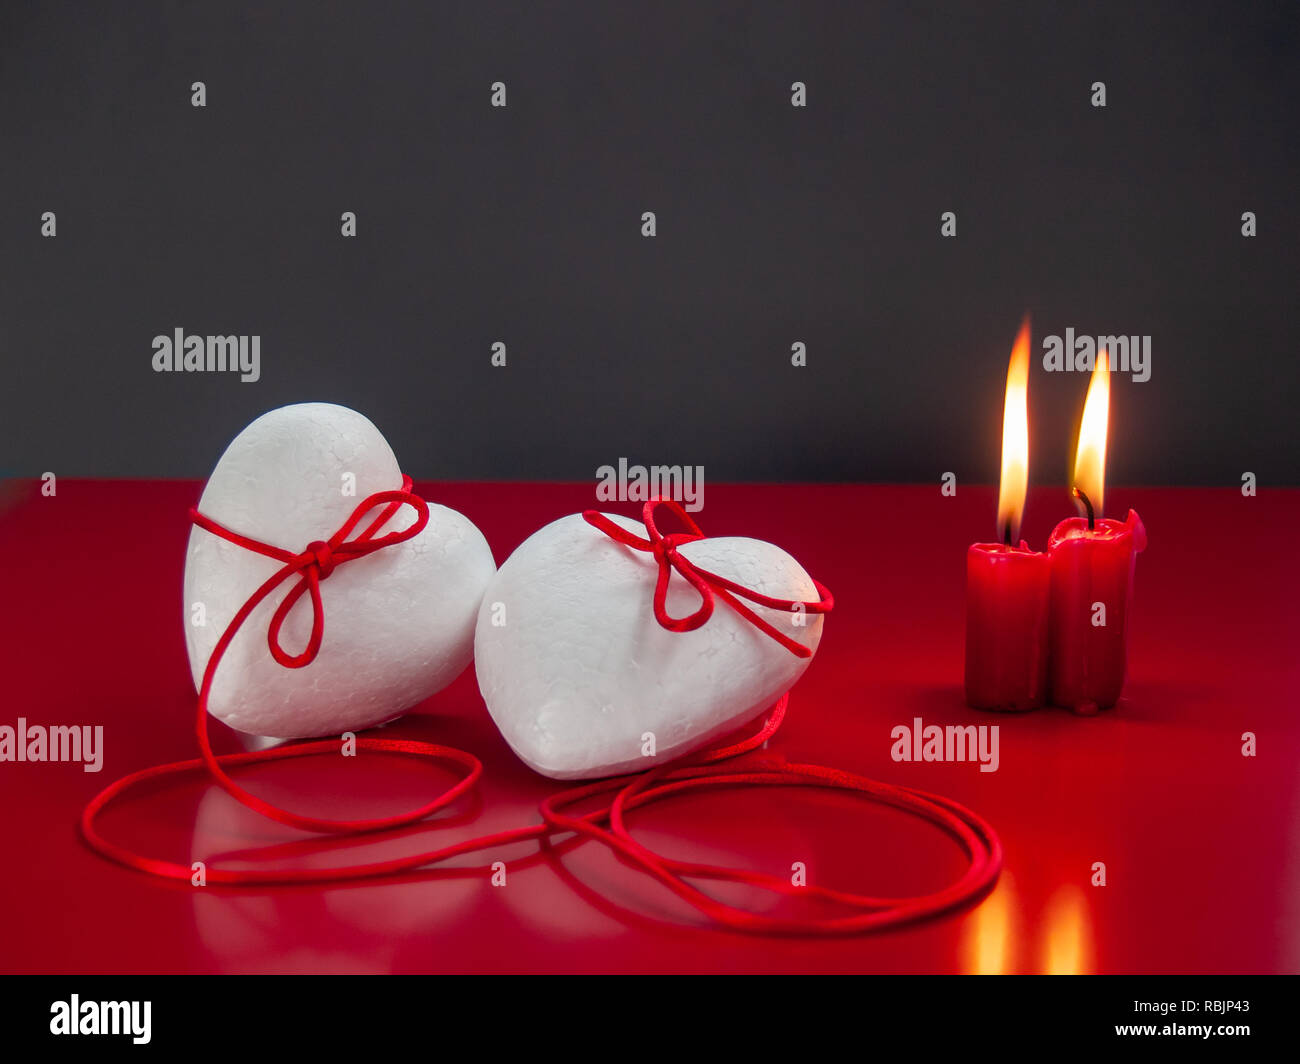 Concetto di amore poliespan due cuori uniti con un filo rosso che simboleggia la leggenda del filo rosso e rosso due candele accese Foto Stock